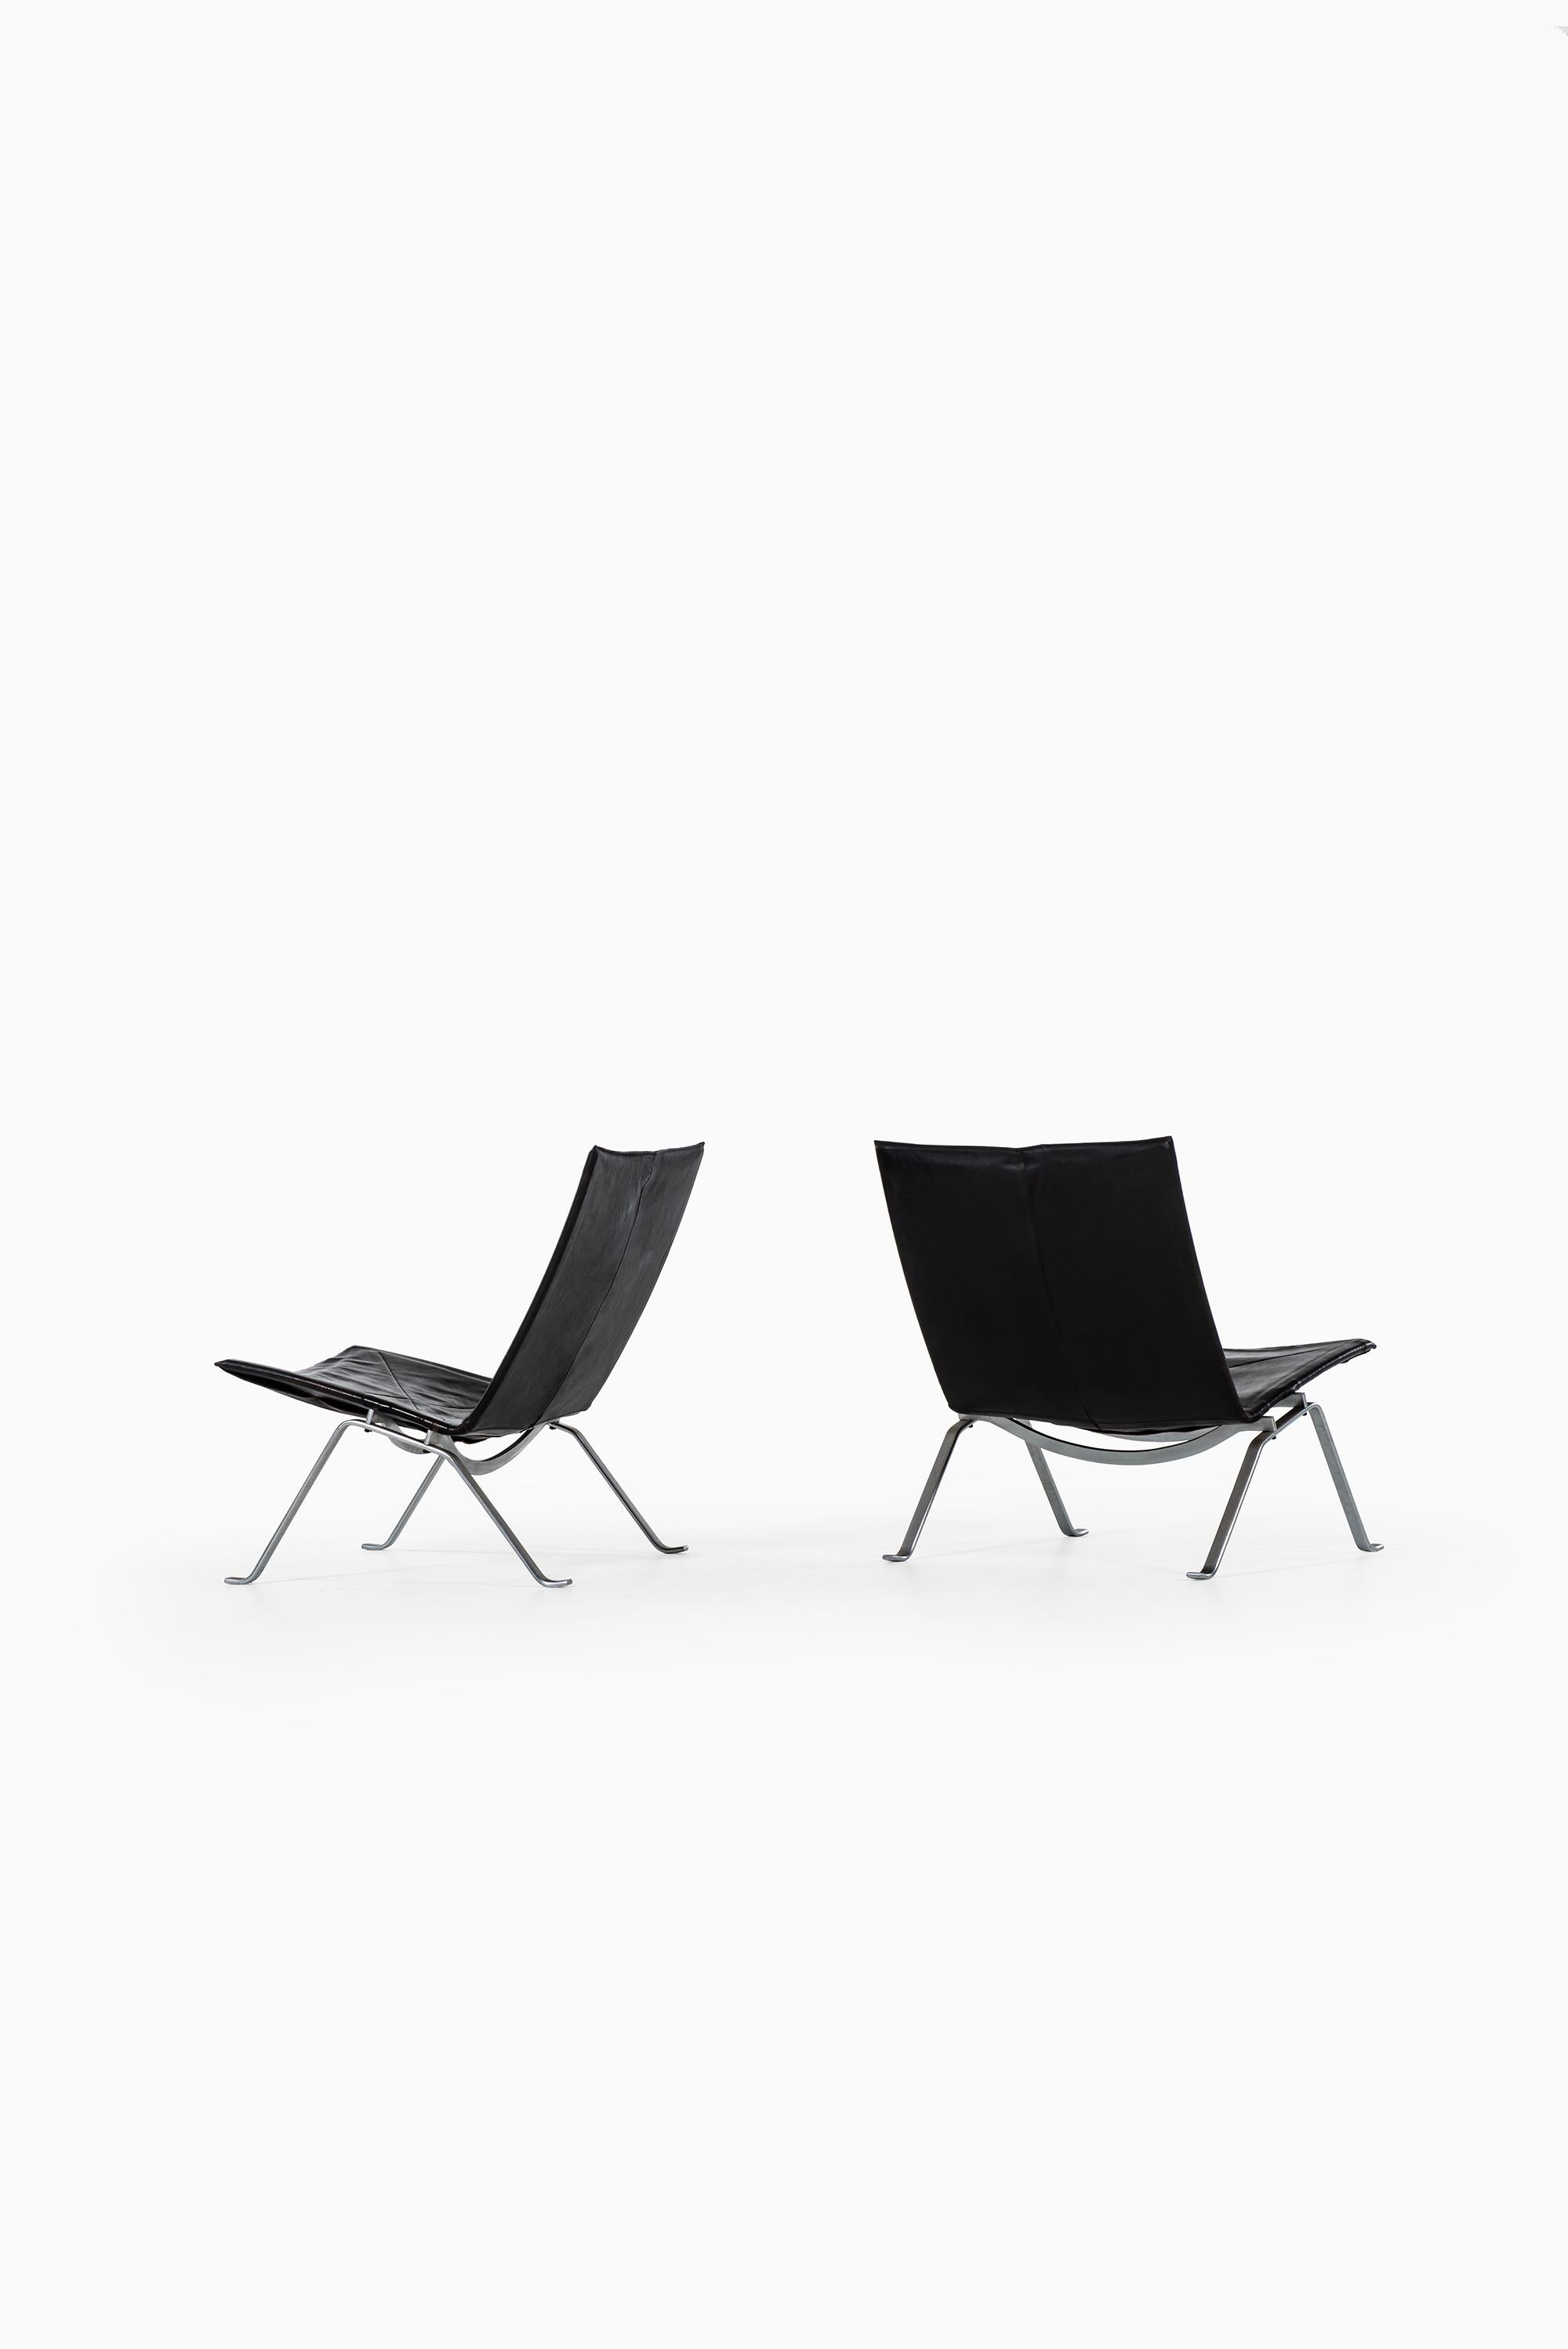 Danish Poul Kjærholm PK-22 easy chairs by E. Kold Christensen in Denmark For Sale